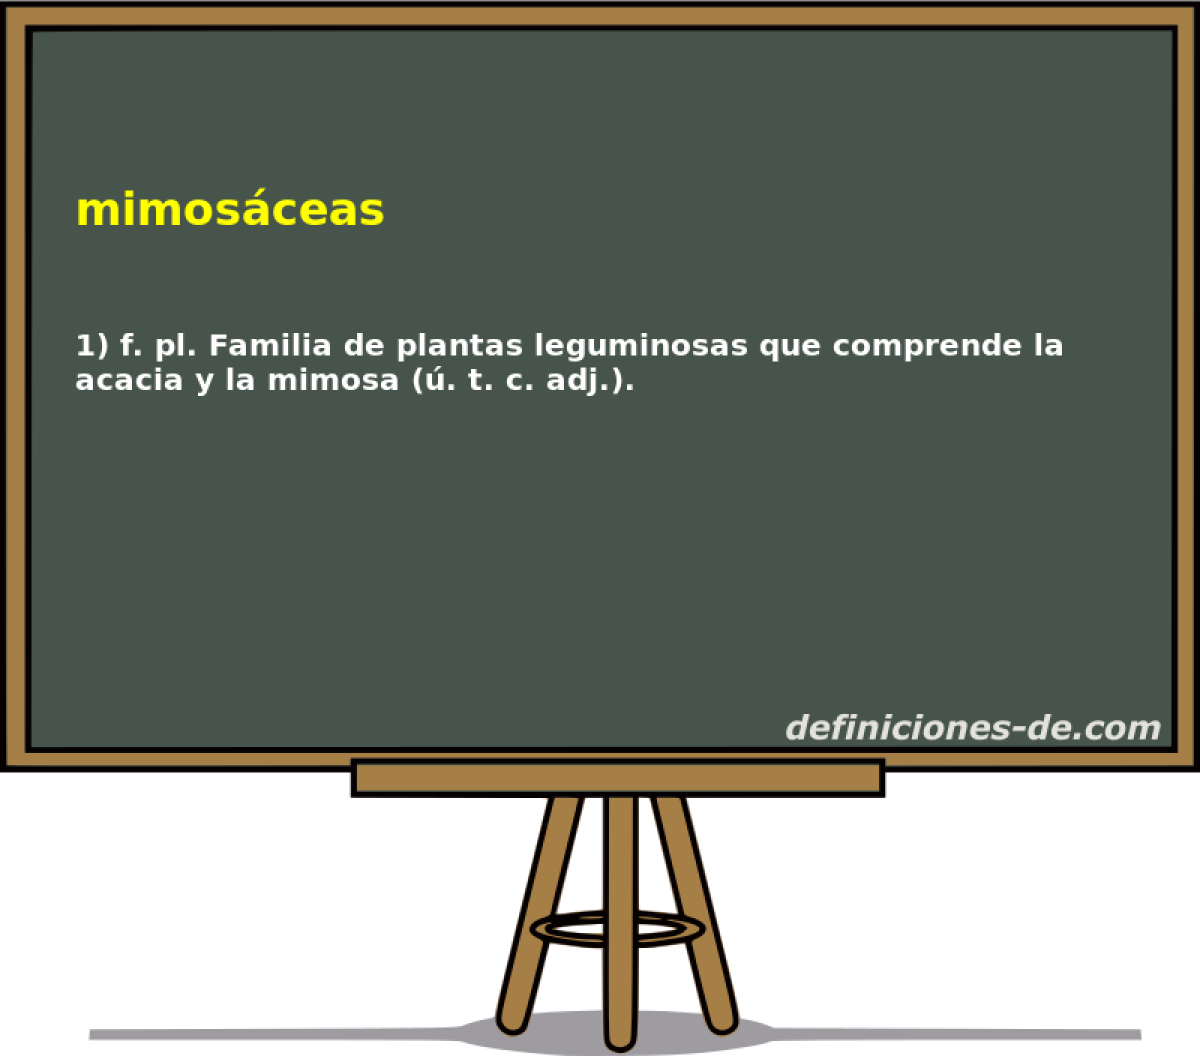 mimosceas 